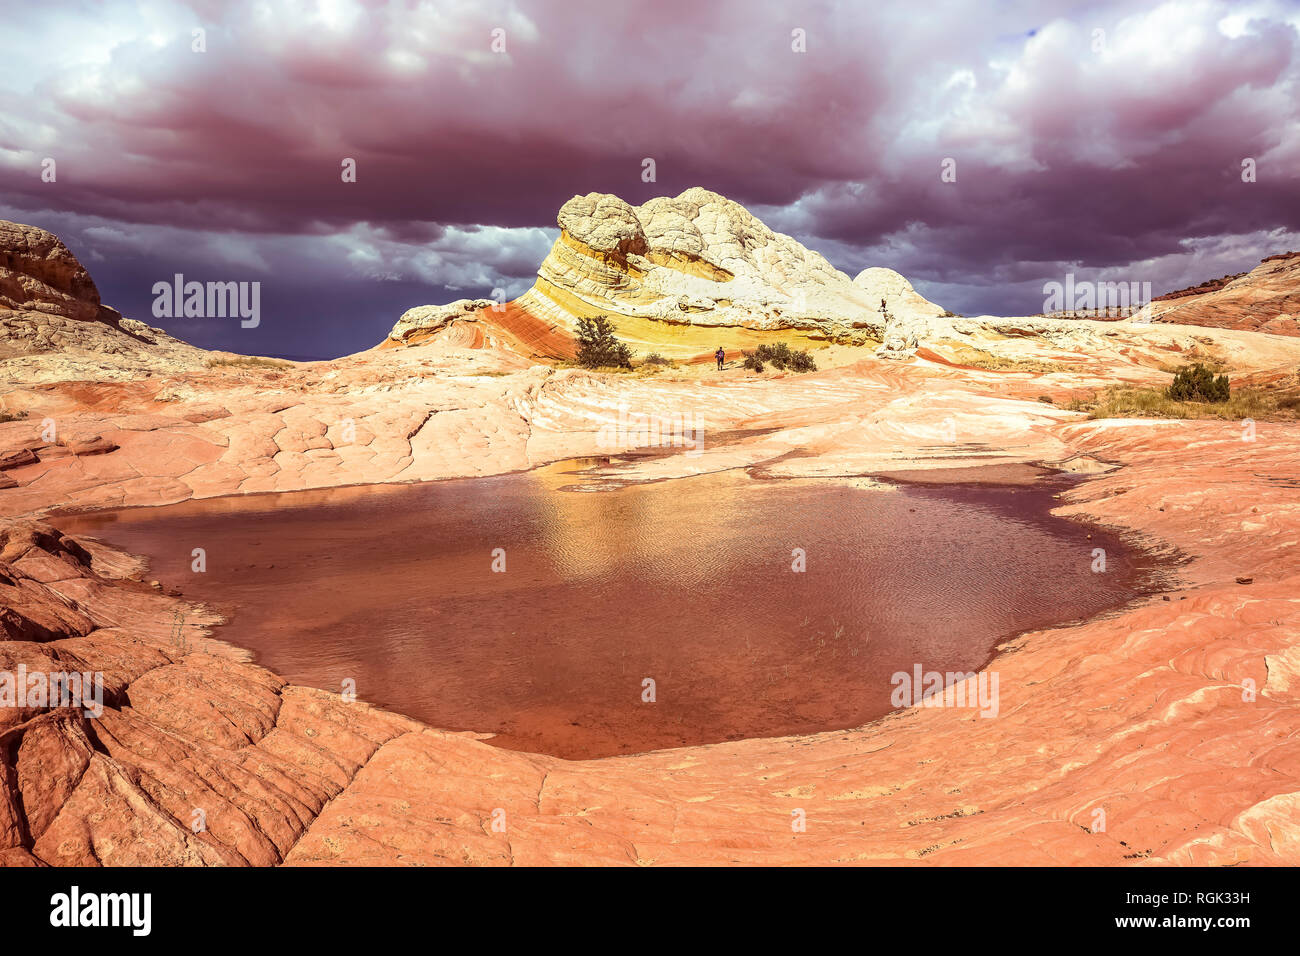 Stati Uniti d'America, Arizona, Paria Plateau, bianco tasca, una persona escursionismo Foto Stock